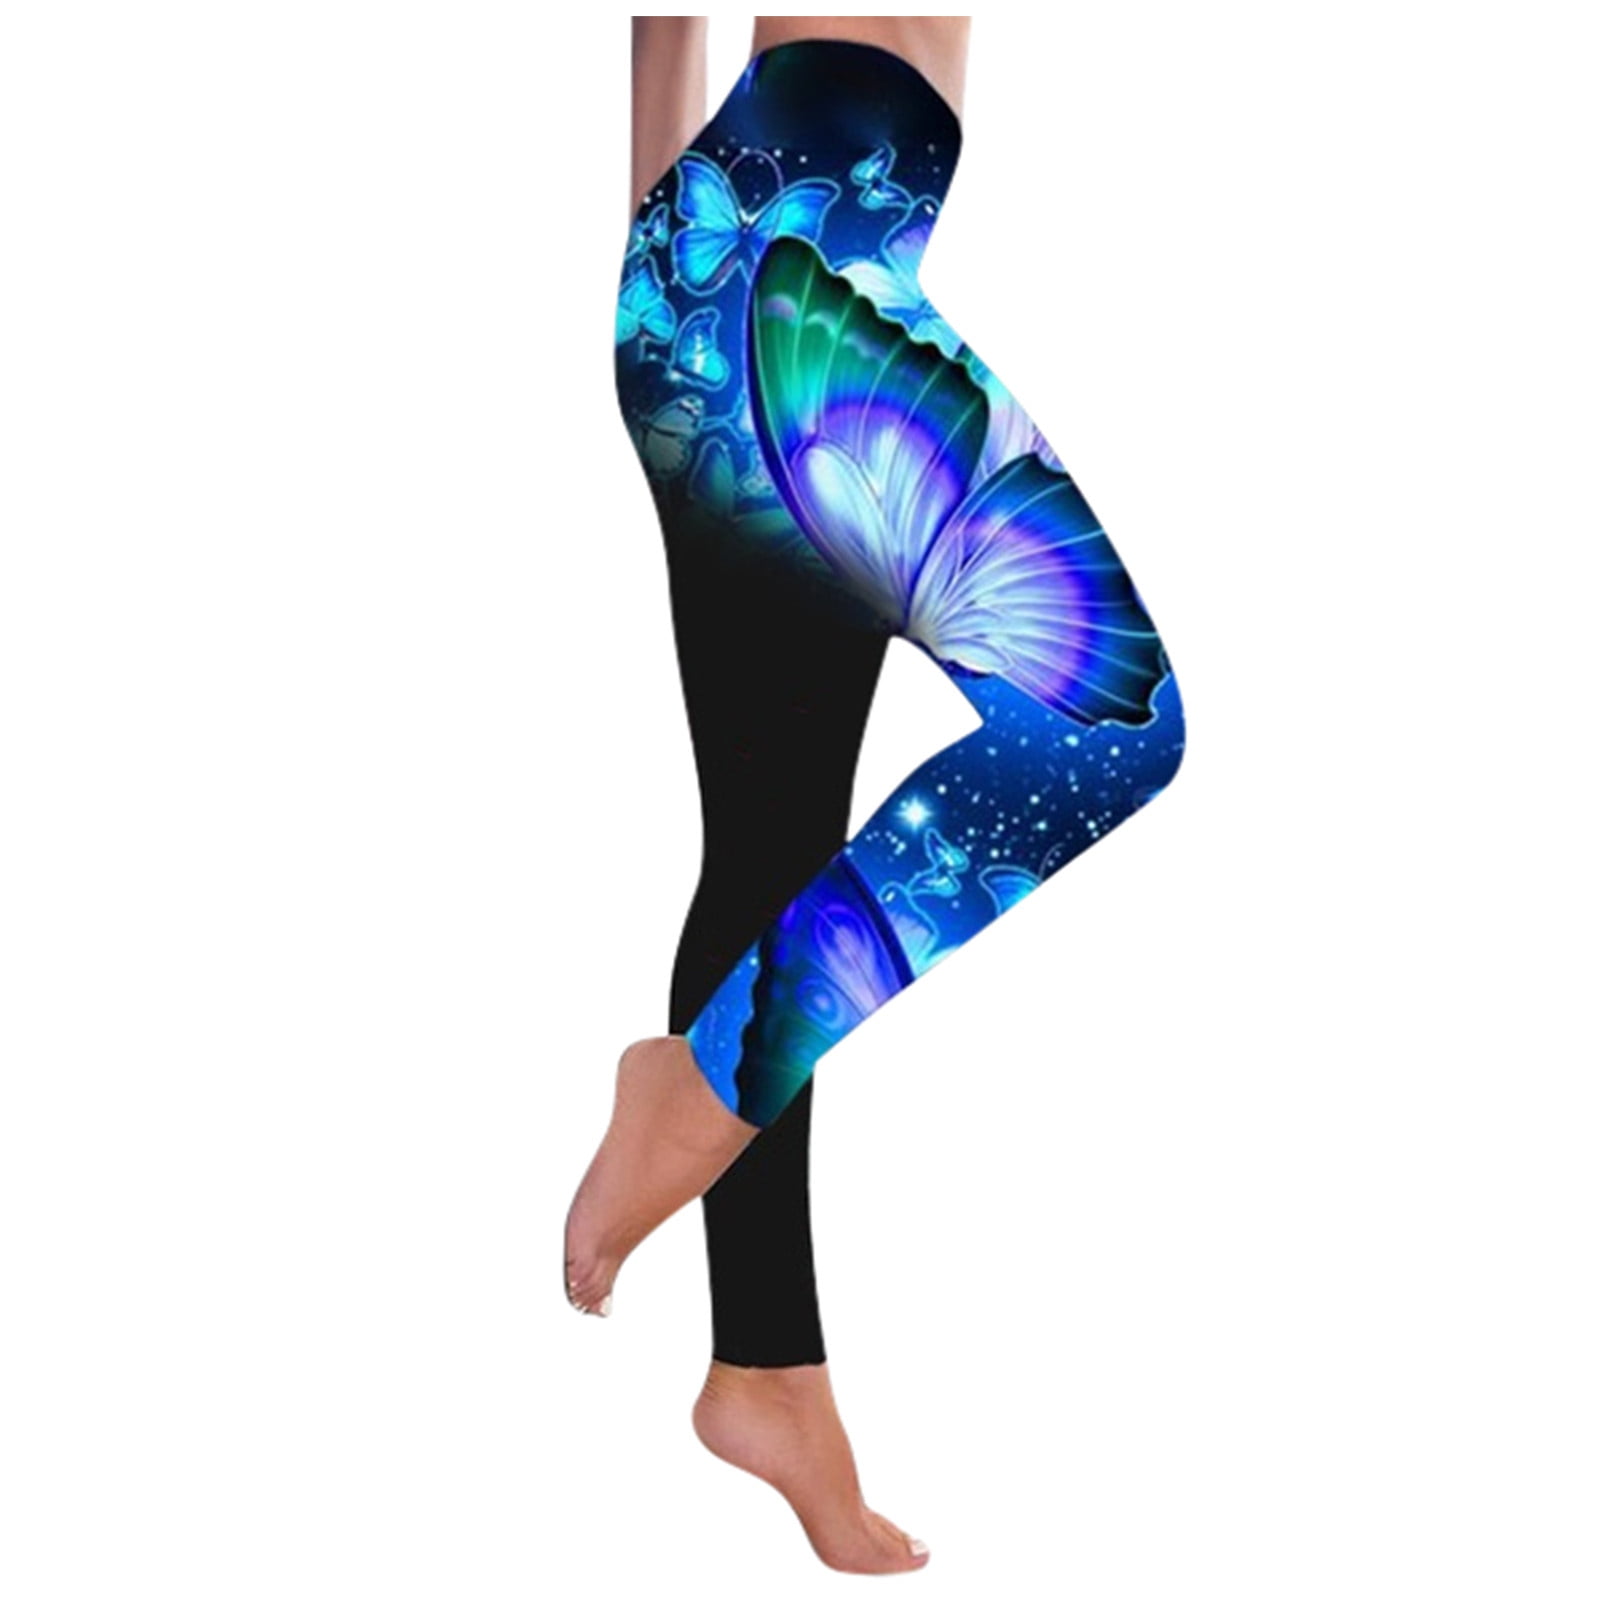 Yoga Pants Plus Size Clearance,Women Fashion Butterfly Print Yoga Pants ...